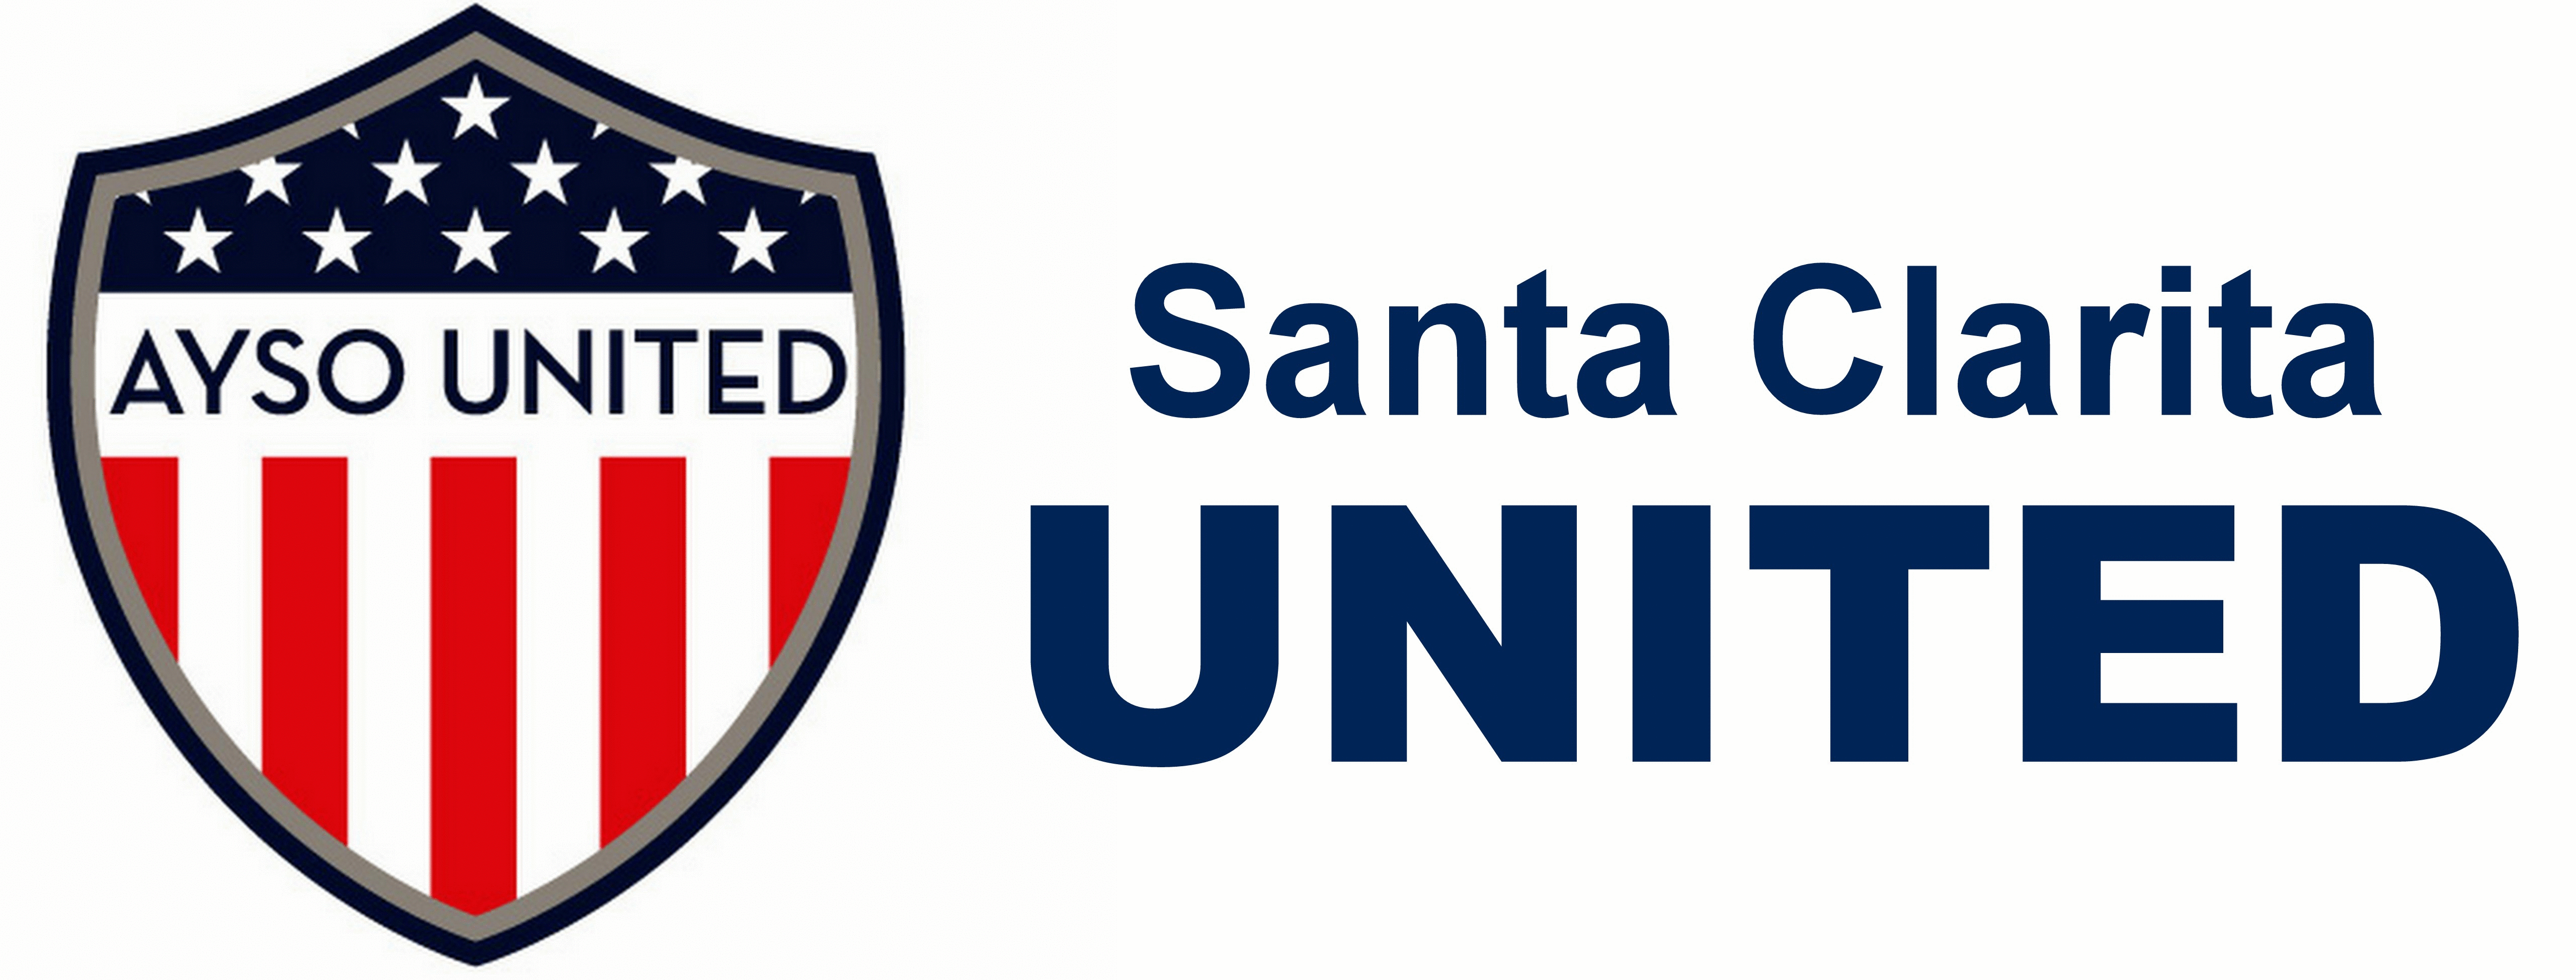 AYSO United Logo - Santa Clarita United | AYSO Region 678